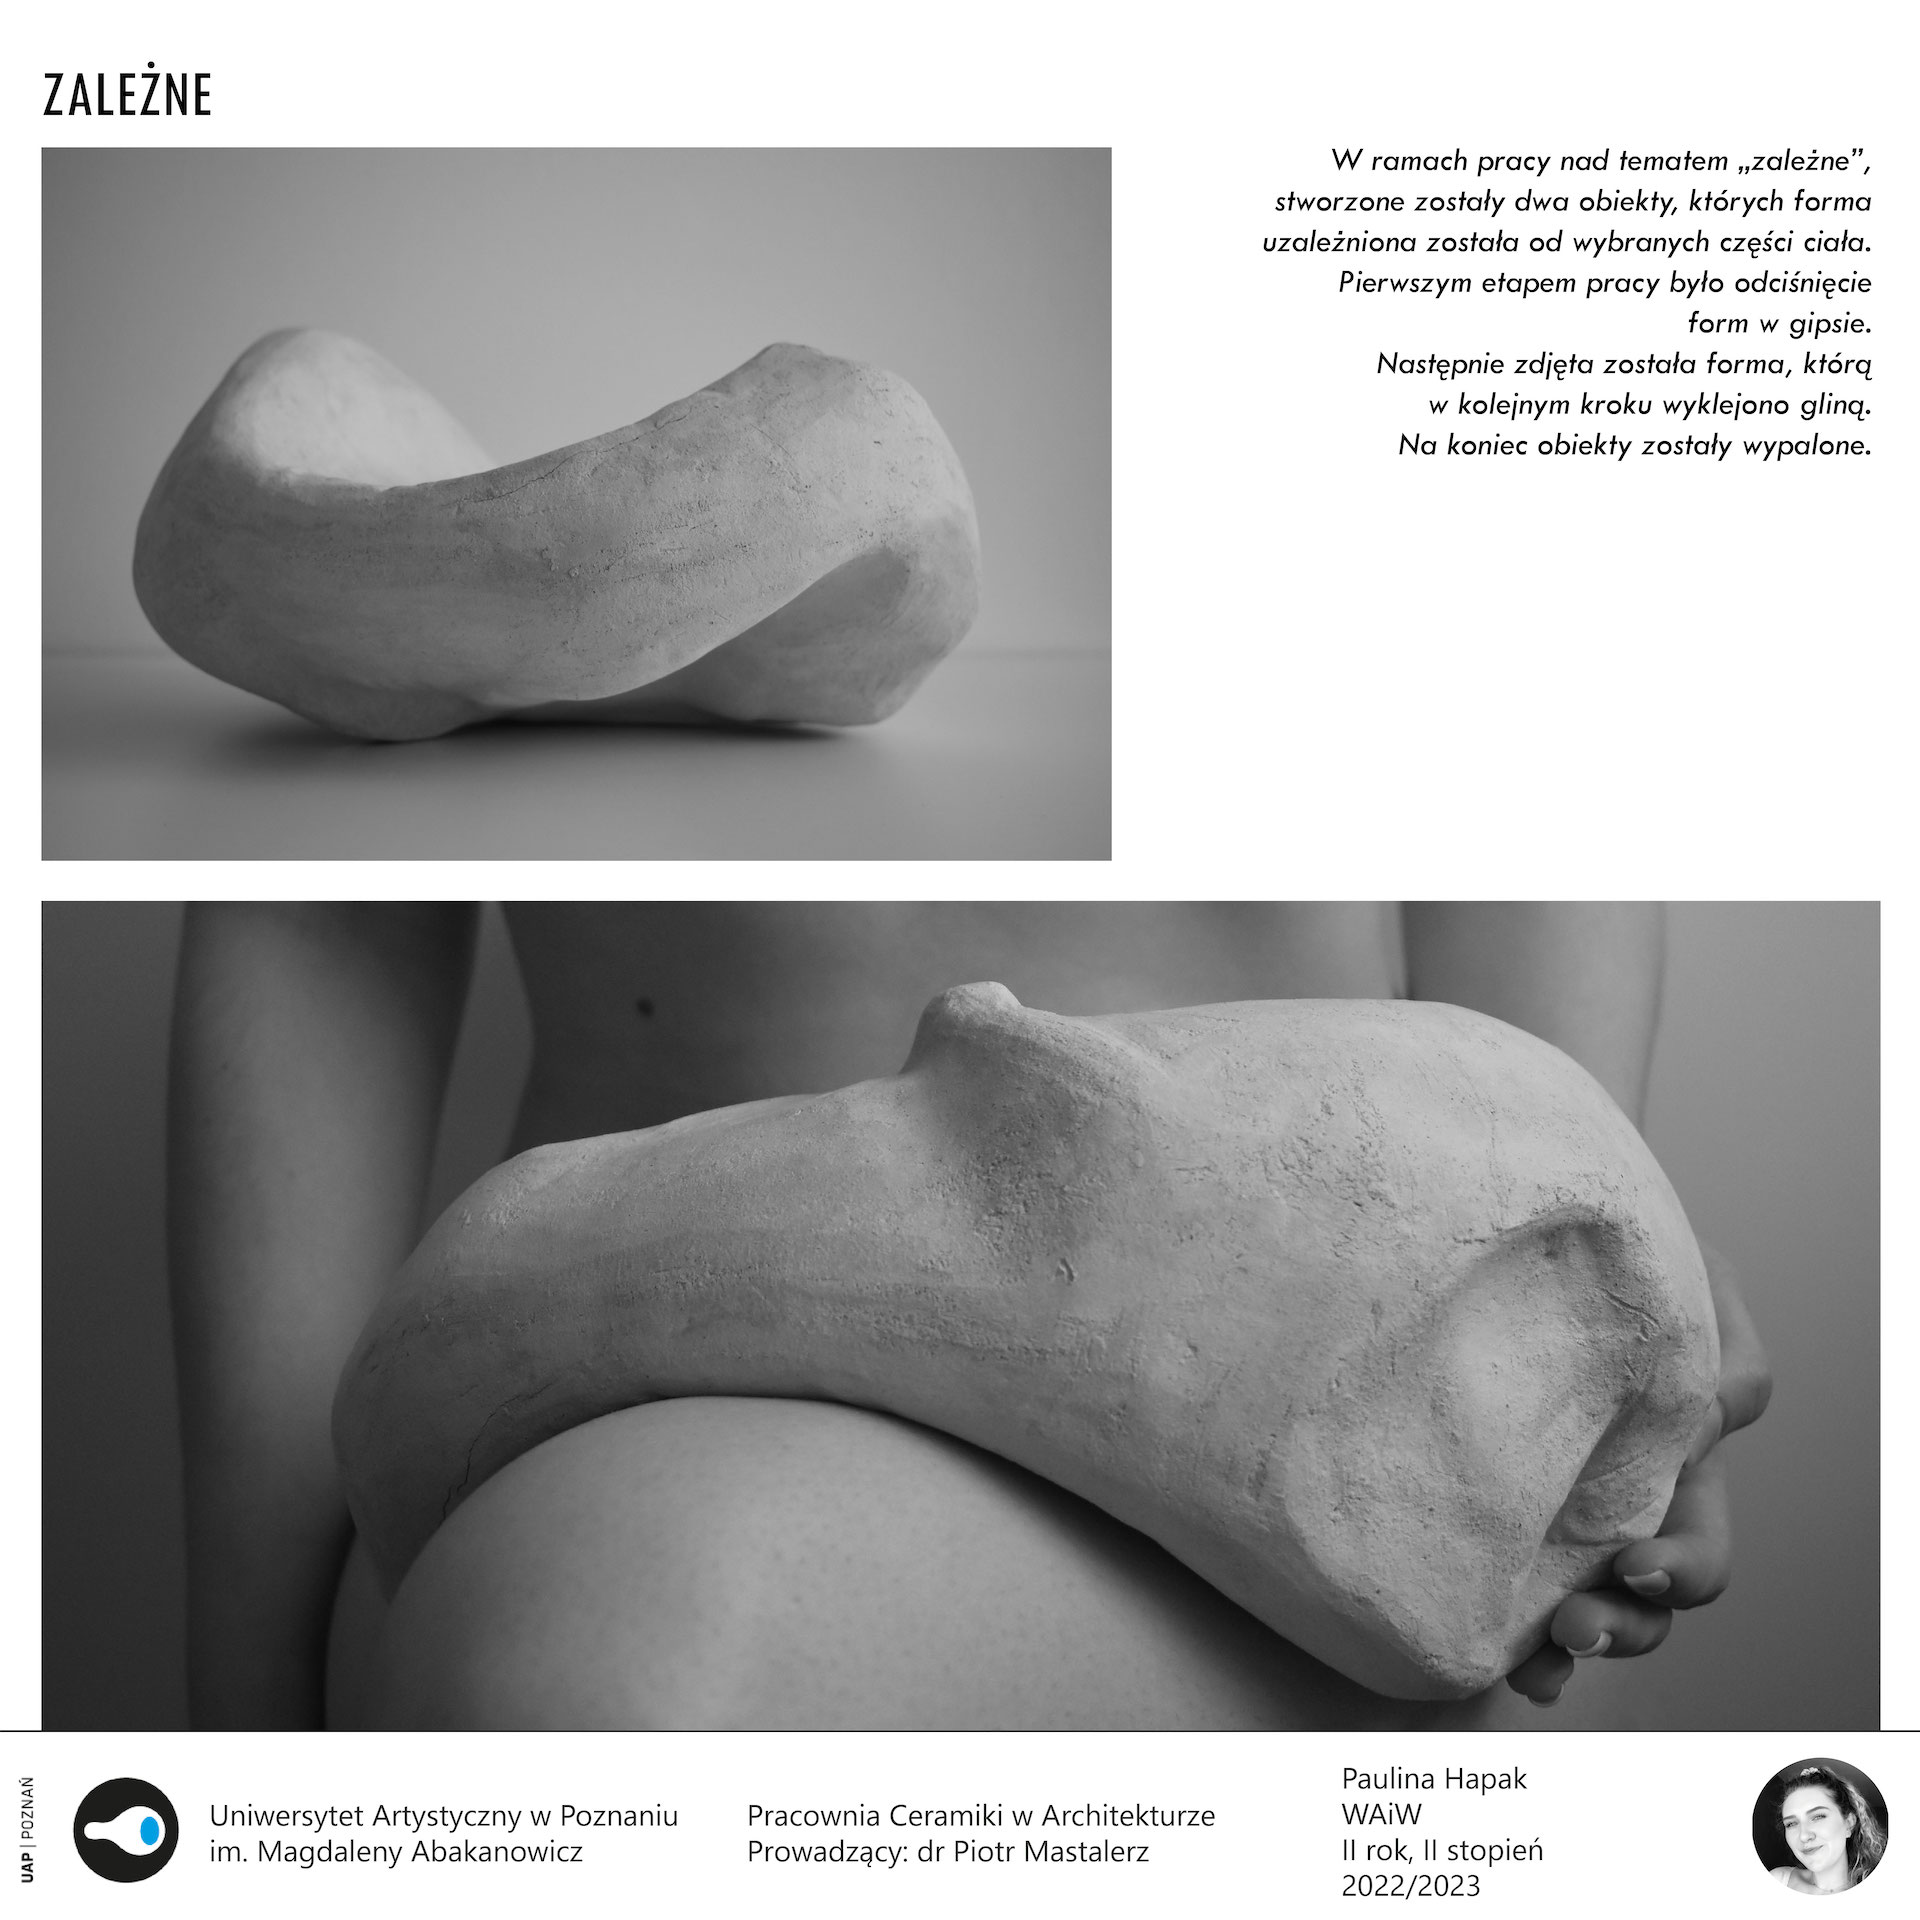 Opis alternatywny: Plansza przedstawia ceramiczną formę położoną na ciele kobiety.